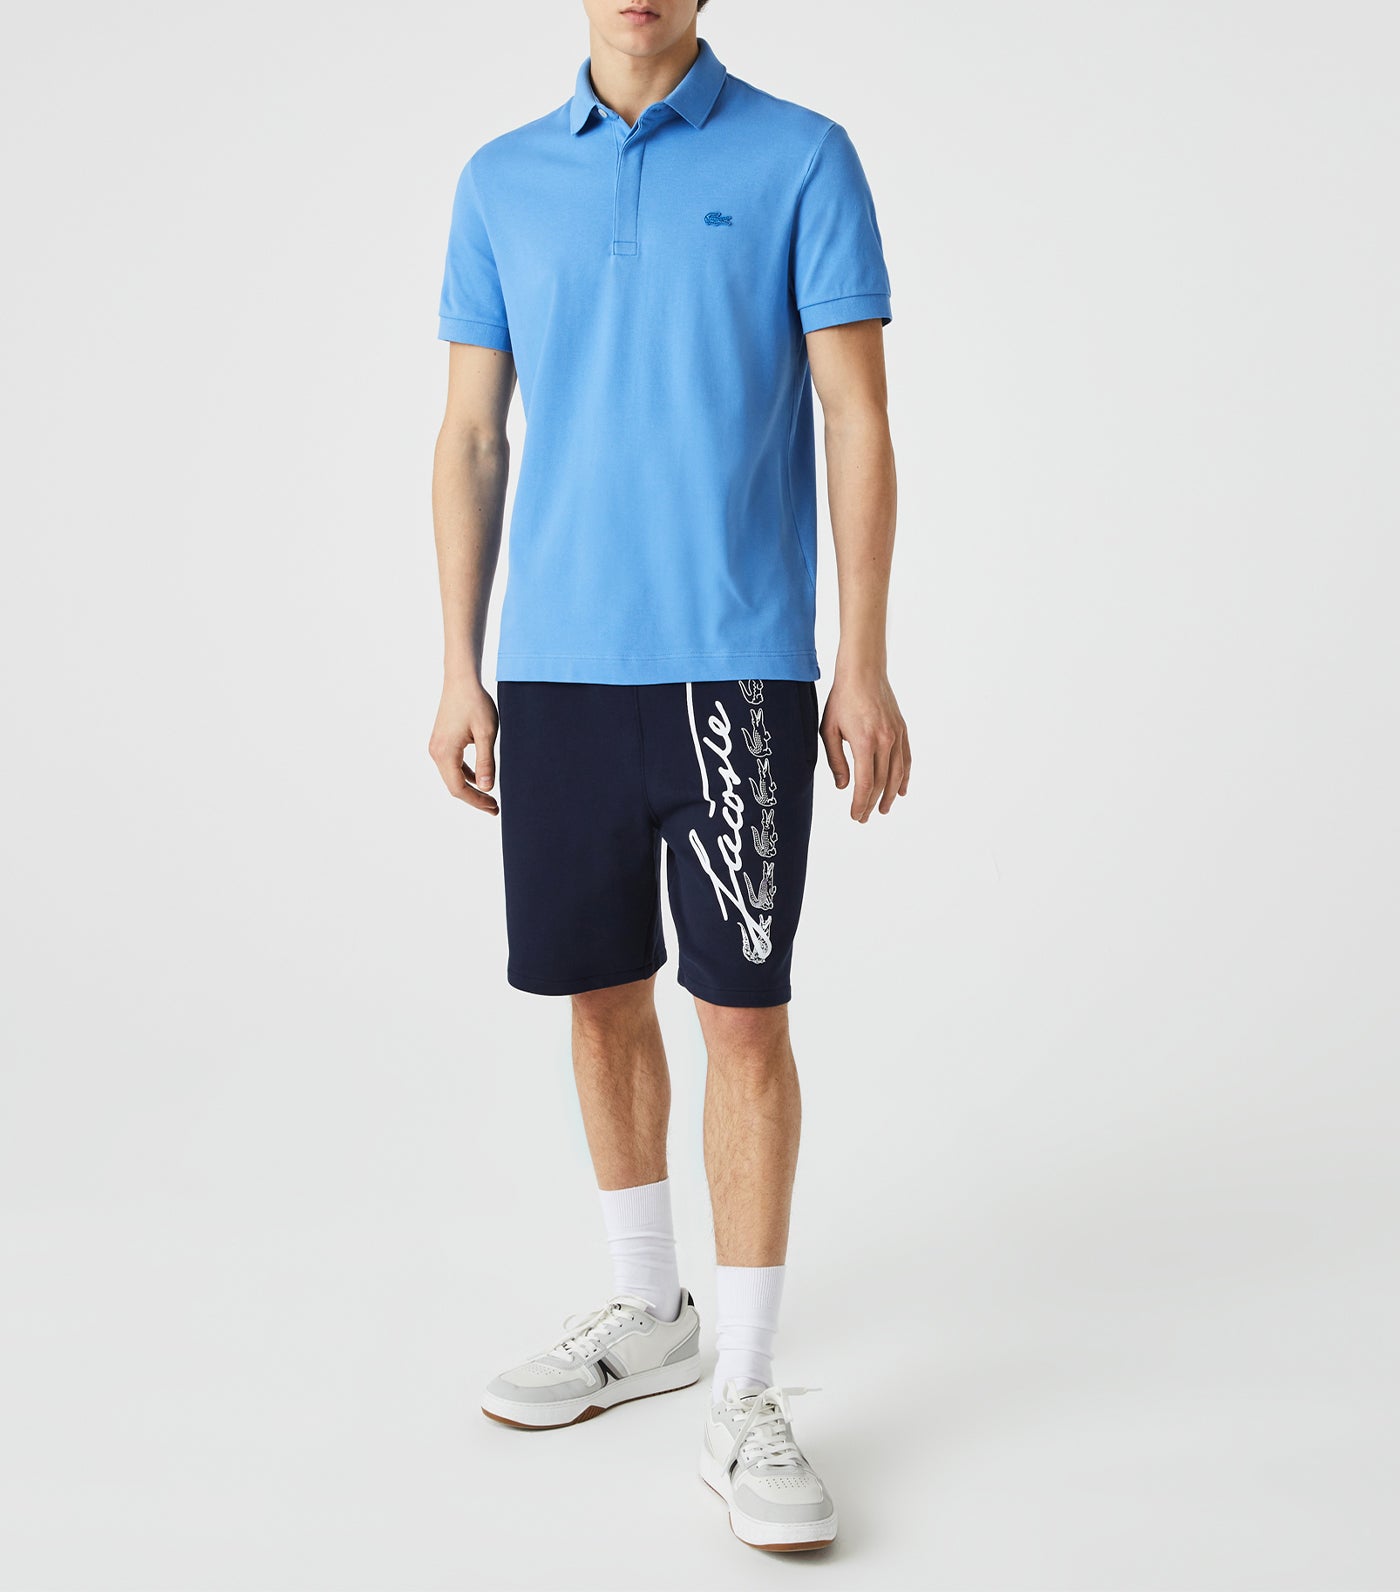 Men's Paris Polo Shirt Regular Fit Stretch Cotton Piqué Ethereal